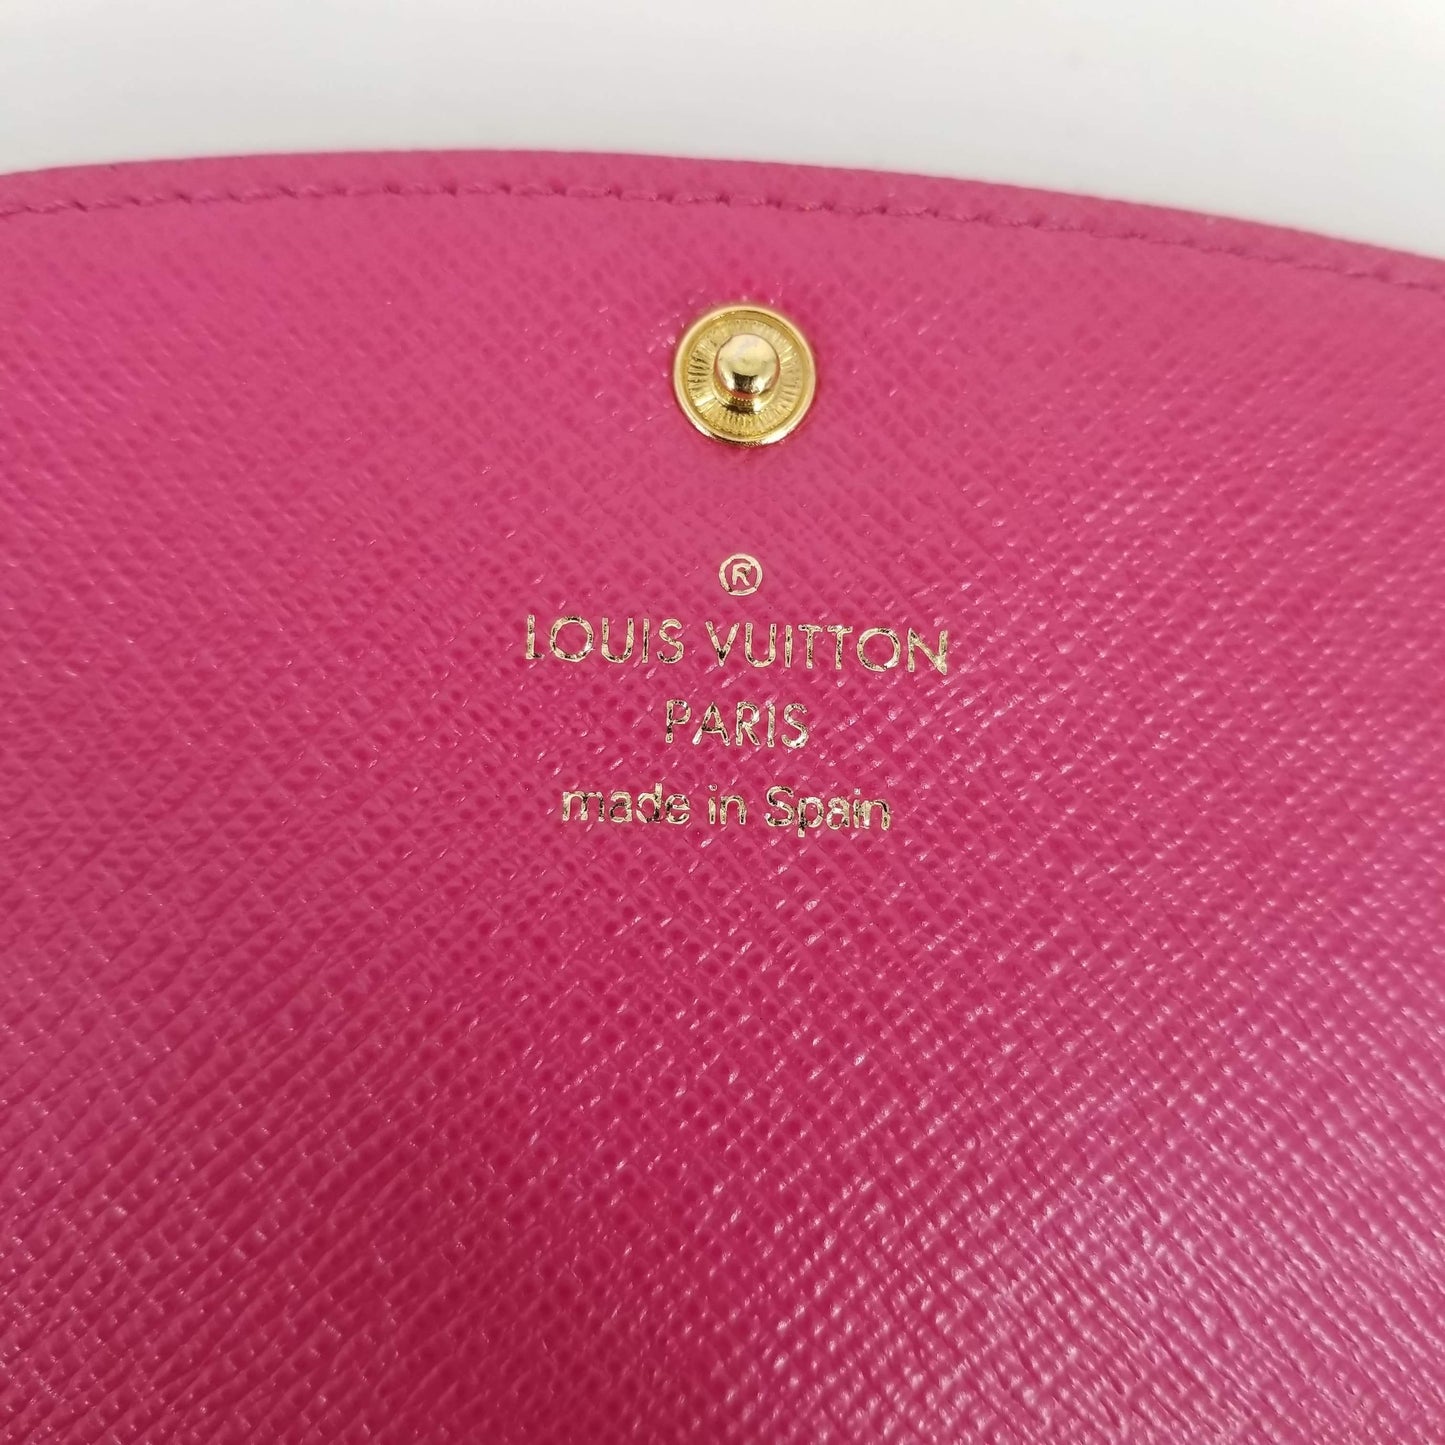 Authentic Louis Vuitton Monogram Emillie Wallet